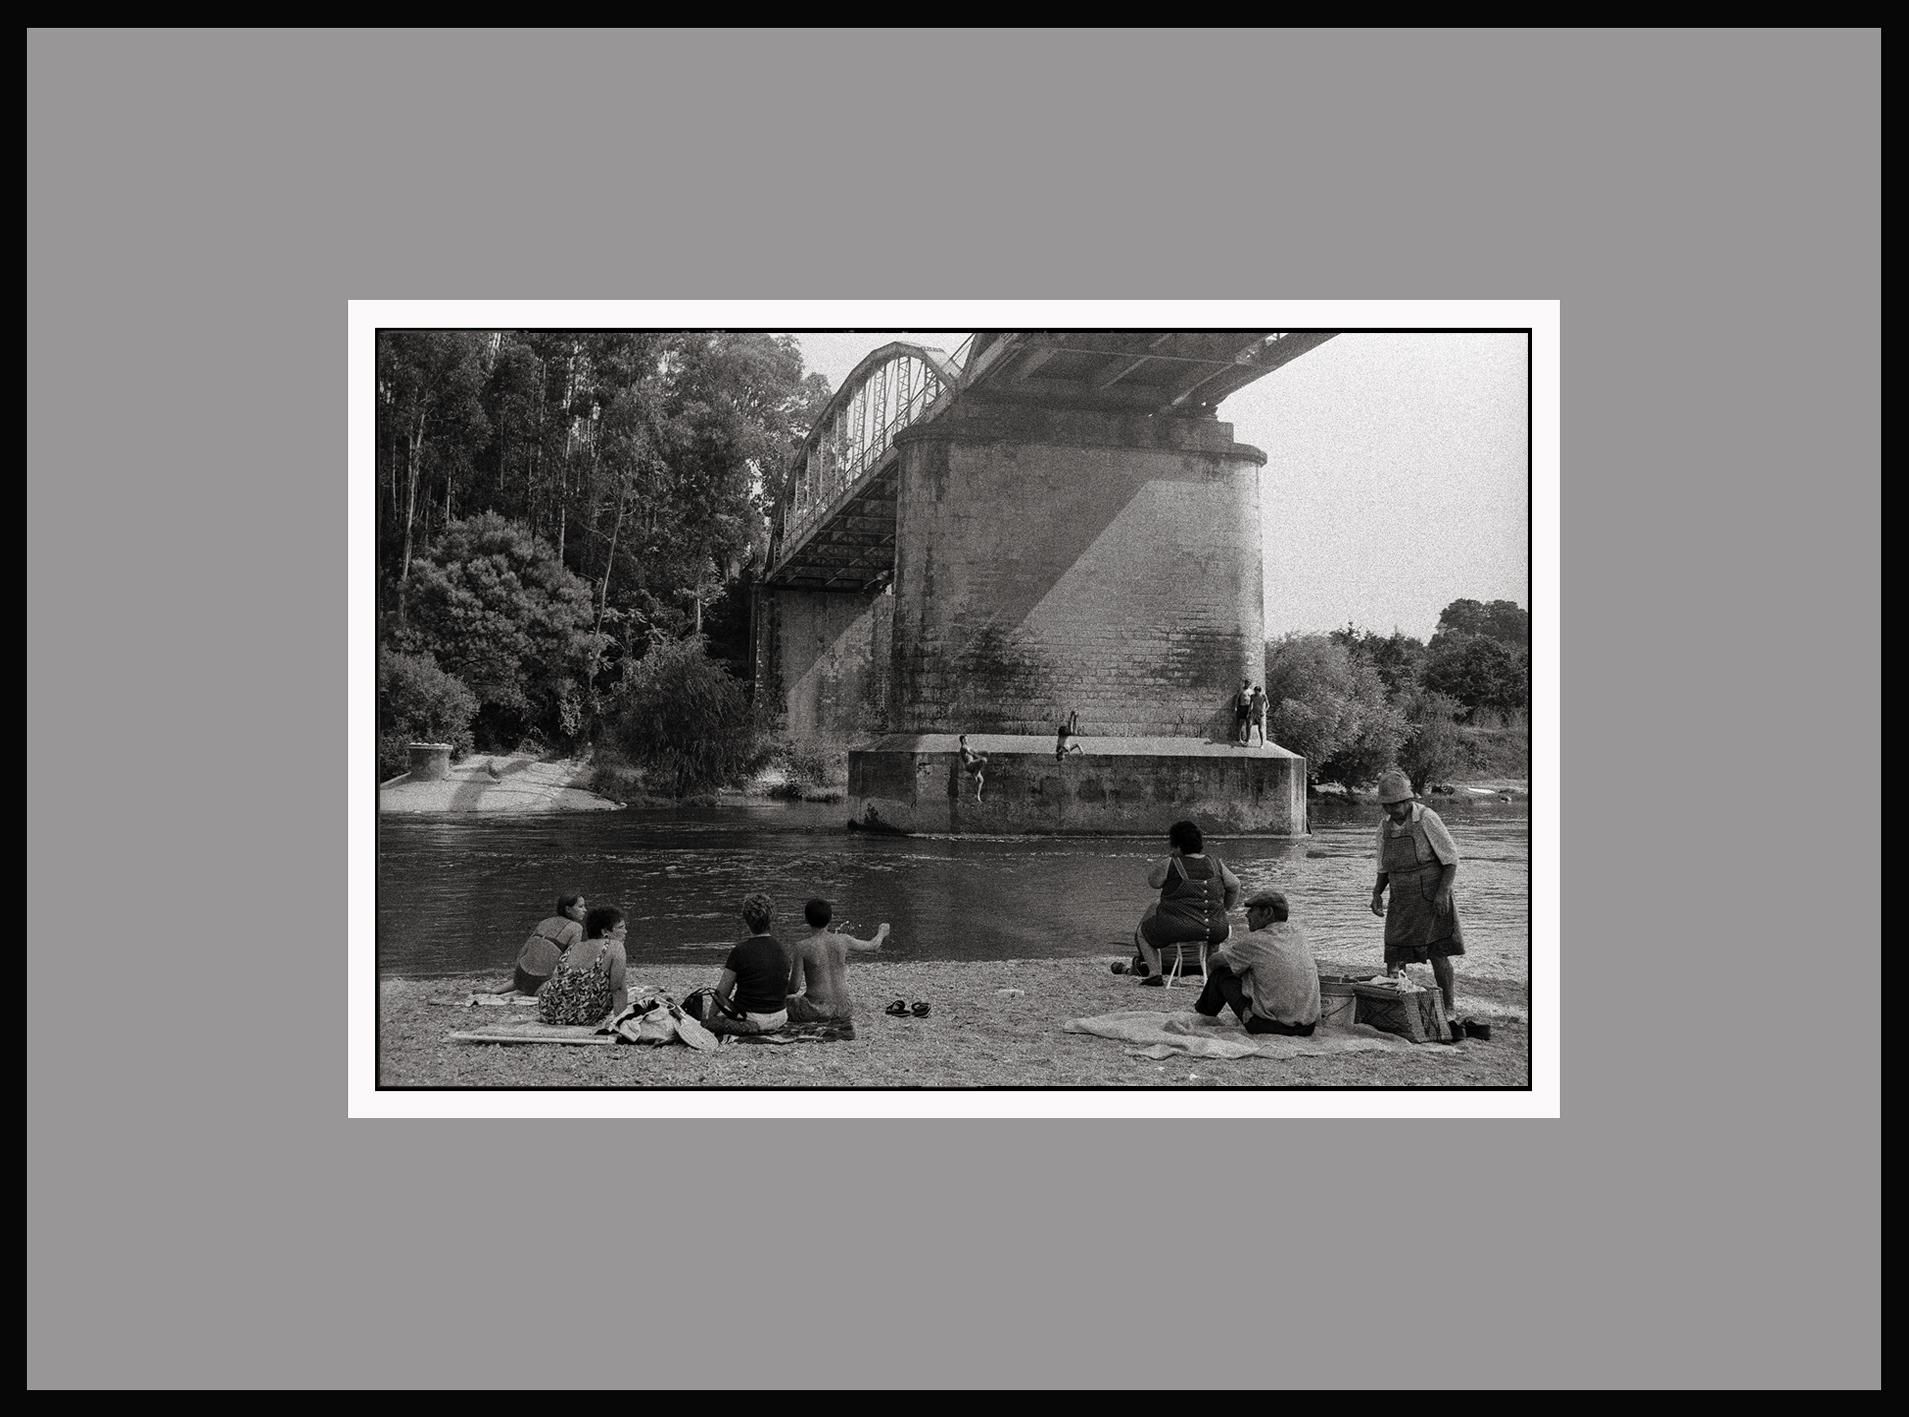 River Jumping - Portugal 2000 - Gelatinesilberdruck - Signiert (Schwarz), Black and White Photograph, von Ana Maria Cortesão